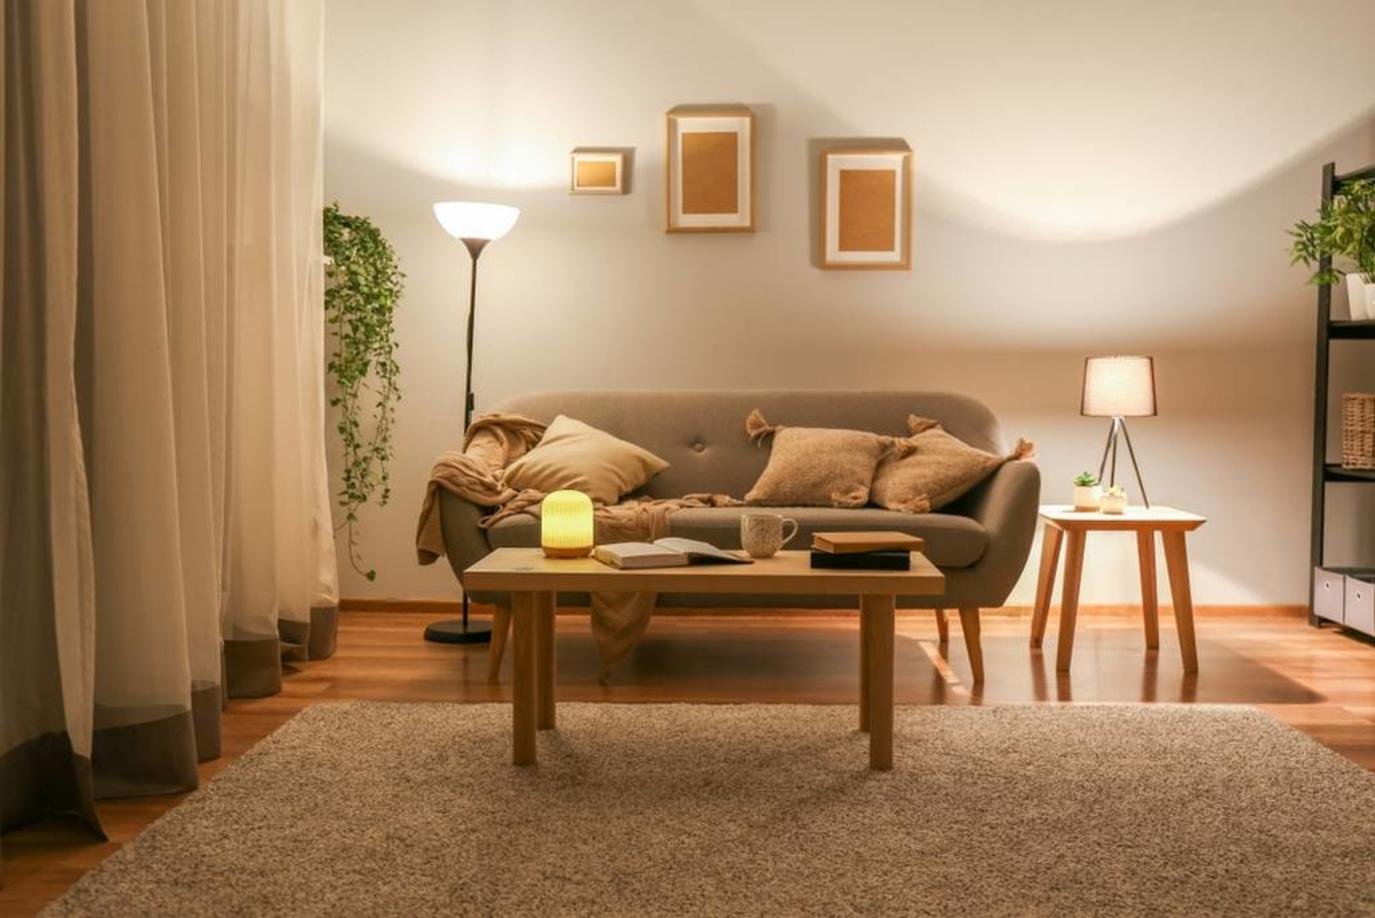 نصائح مساعدة في تنسيق وحدات الإضاءة المتحرّكة في المنزل "المودرن"-2